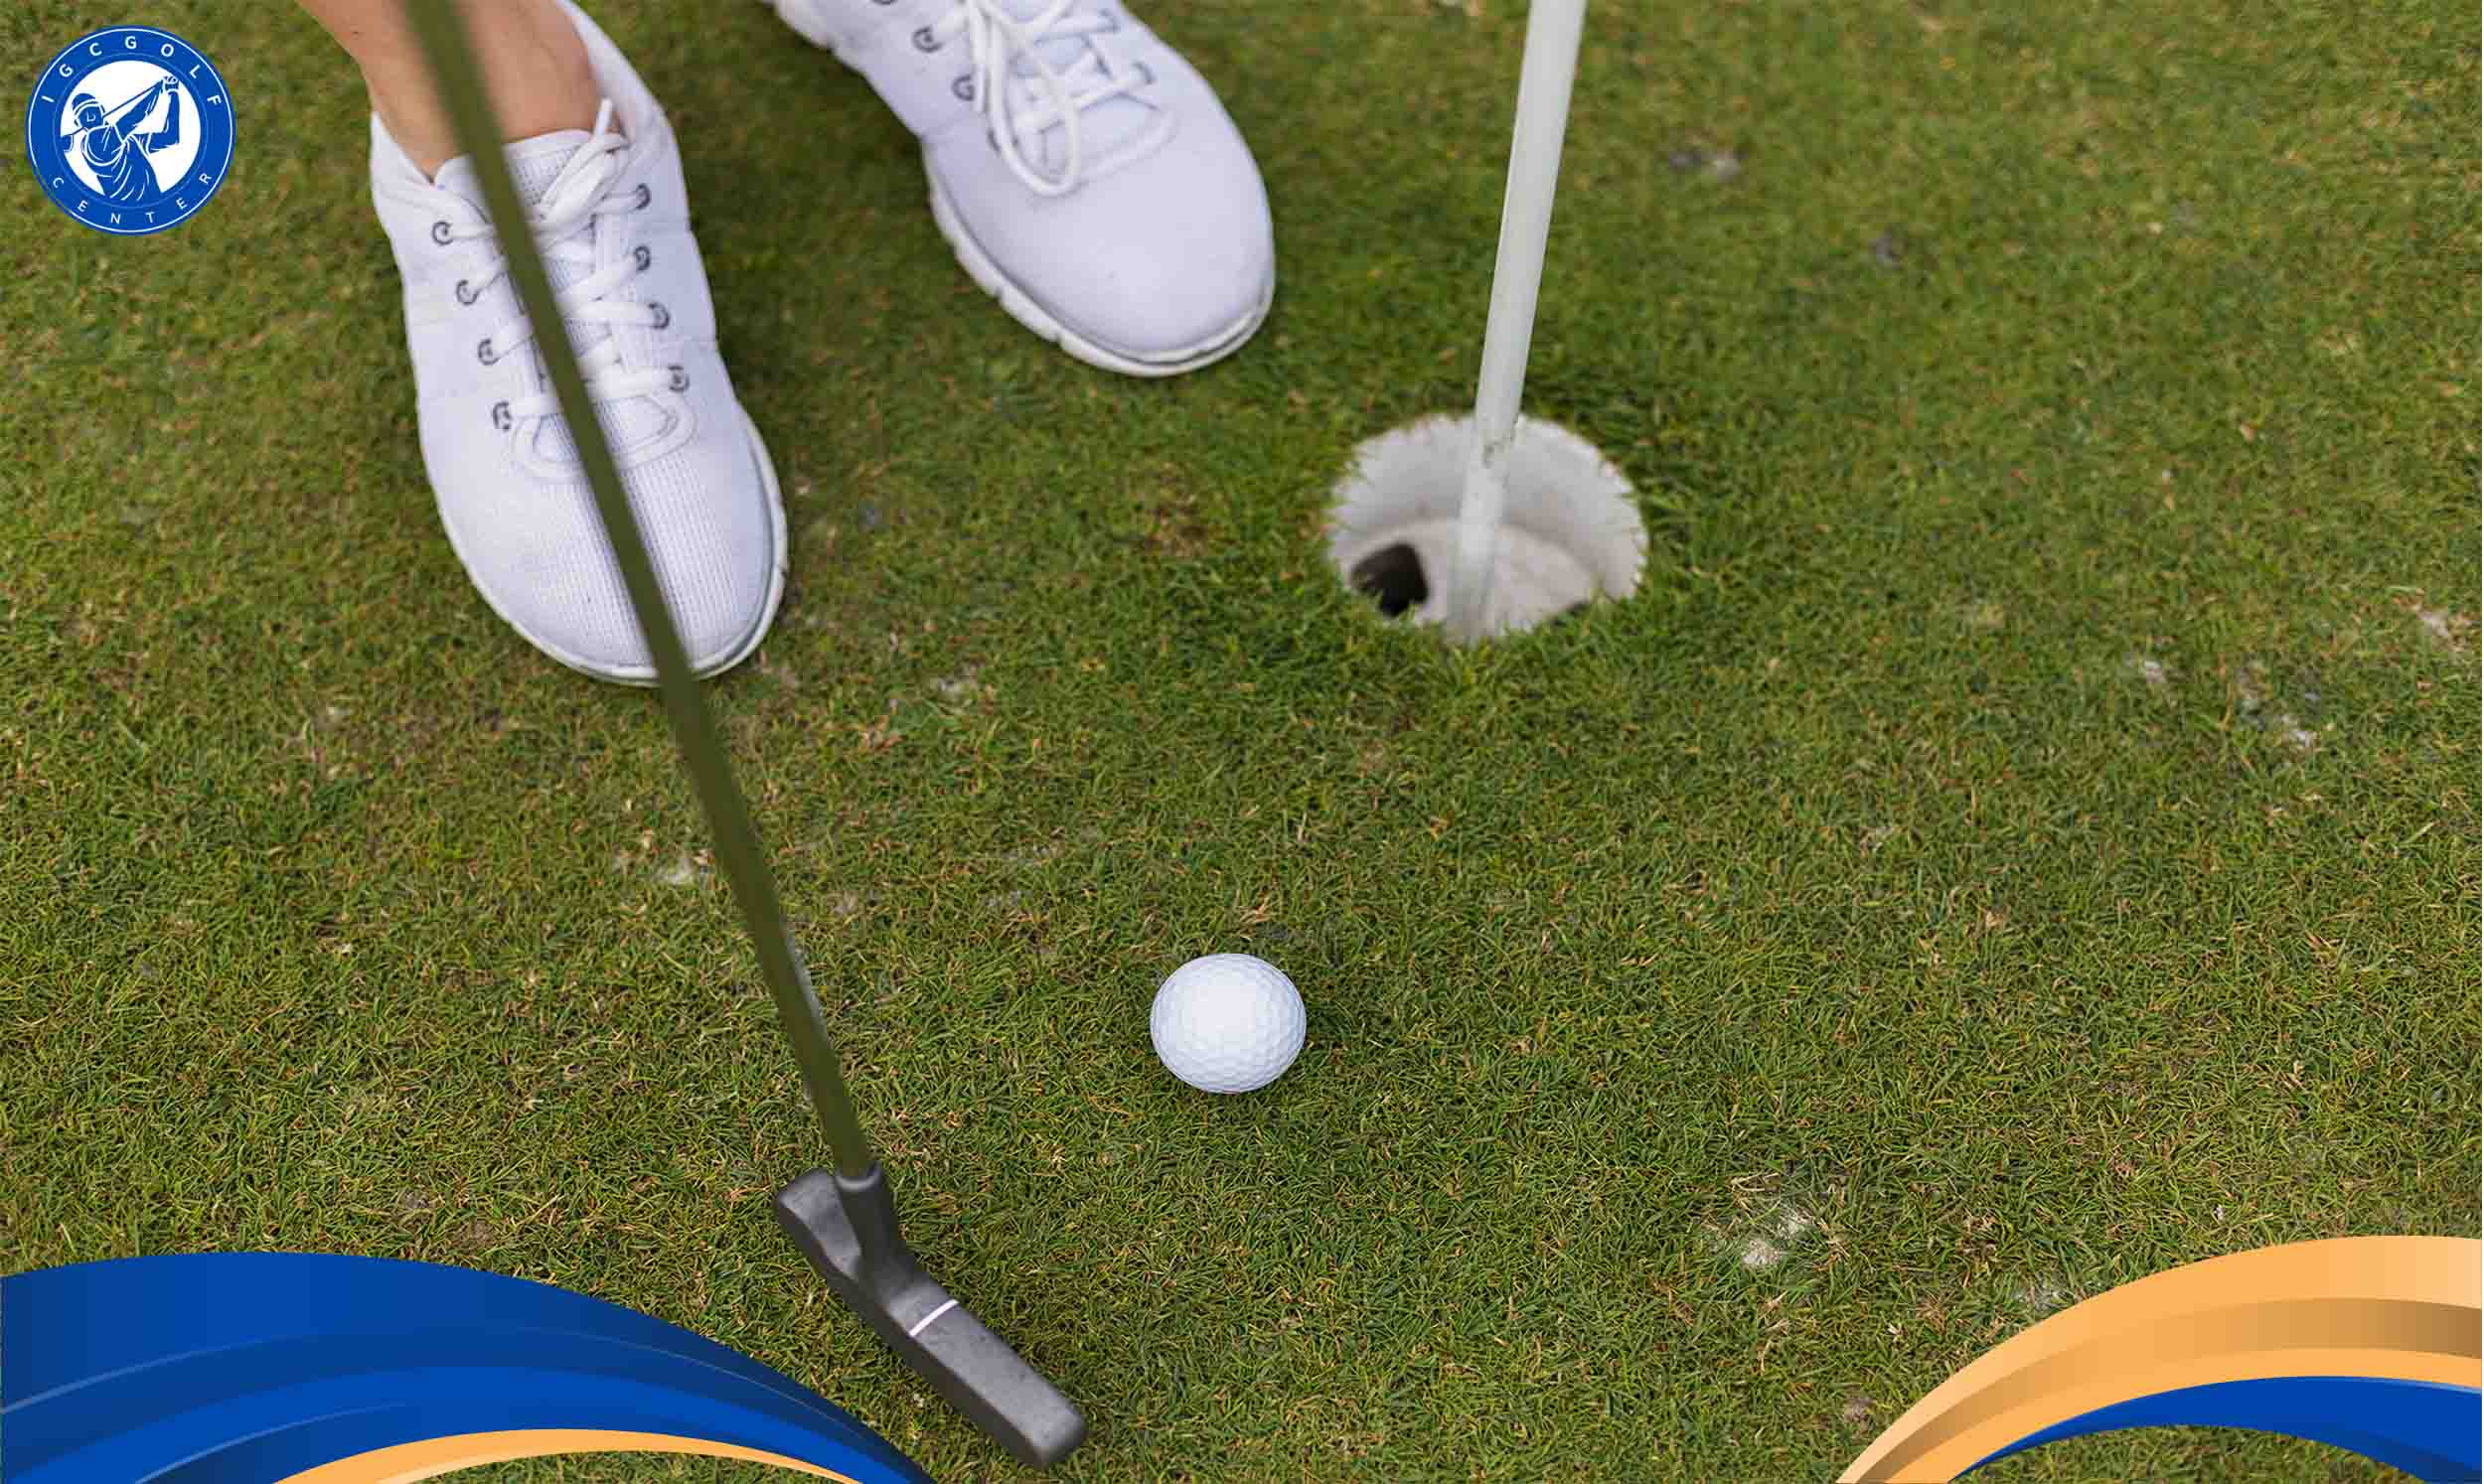 Quy tắc kỹ thuật Pitching trong Golf 